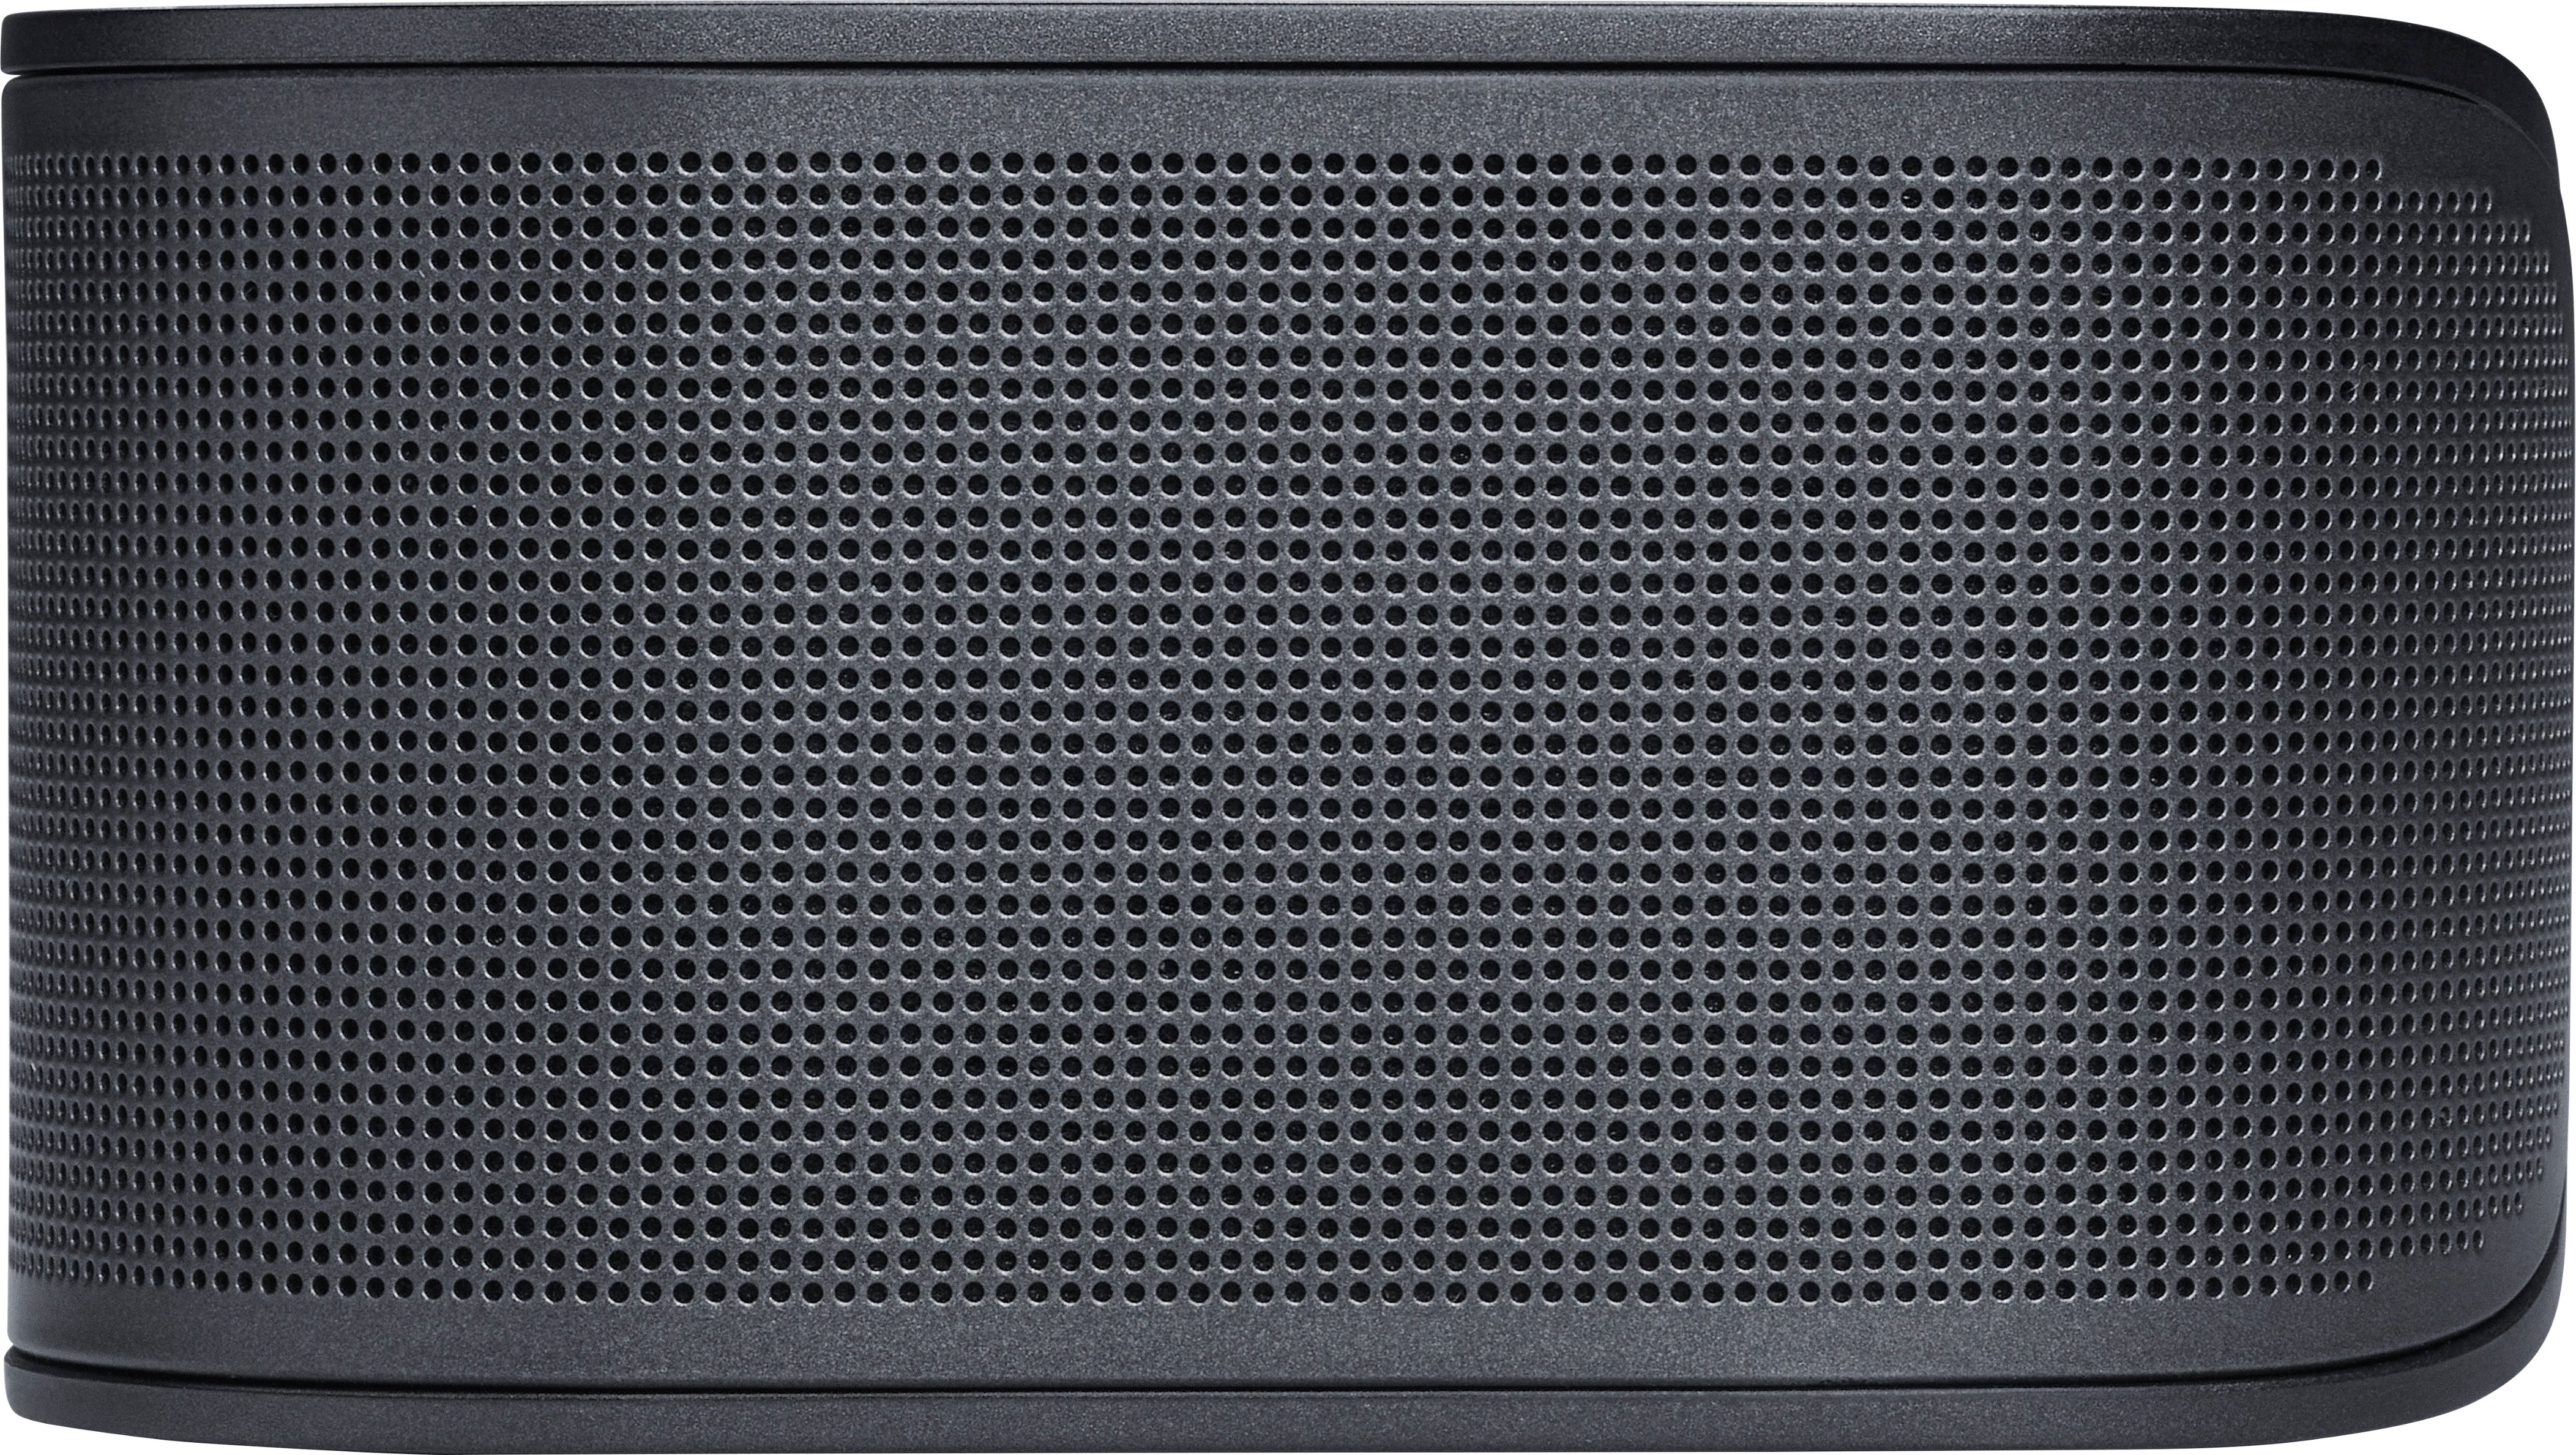 Buy Soundbar JBLBAR500PROBLKAM Dolby Atmos with Multibeam 5.1ch 500 and JBL Black - Best BAR